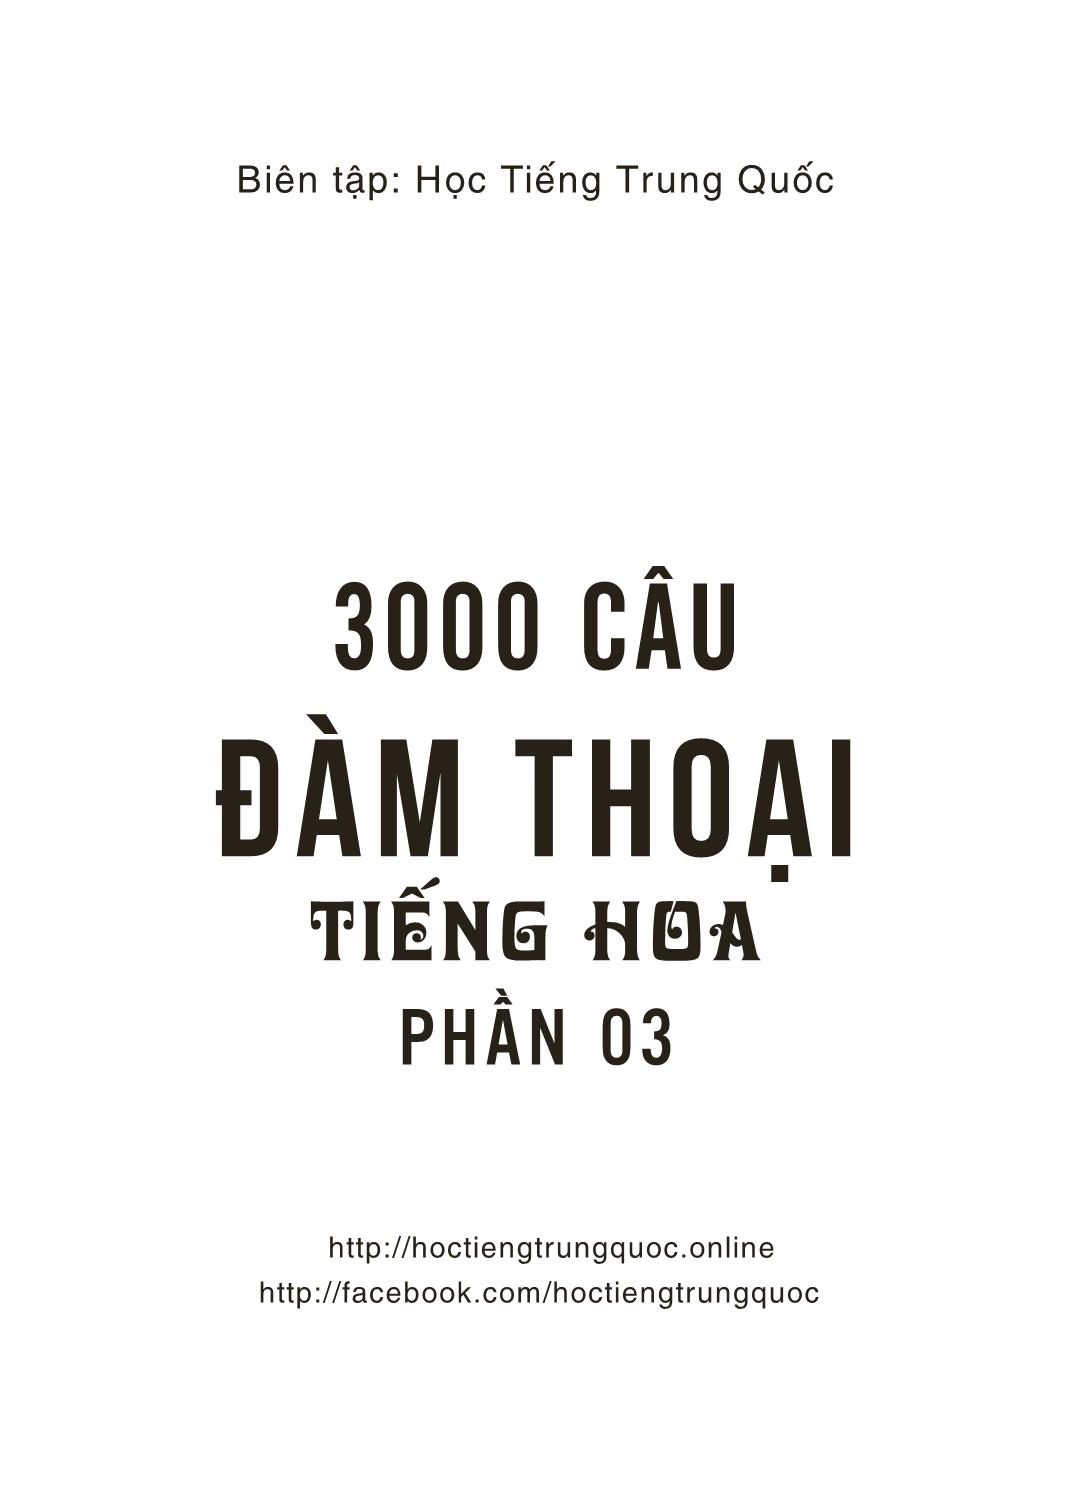 3000 Câu đàm thoại tiếng Hoa - Phần 3 trang 10